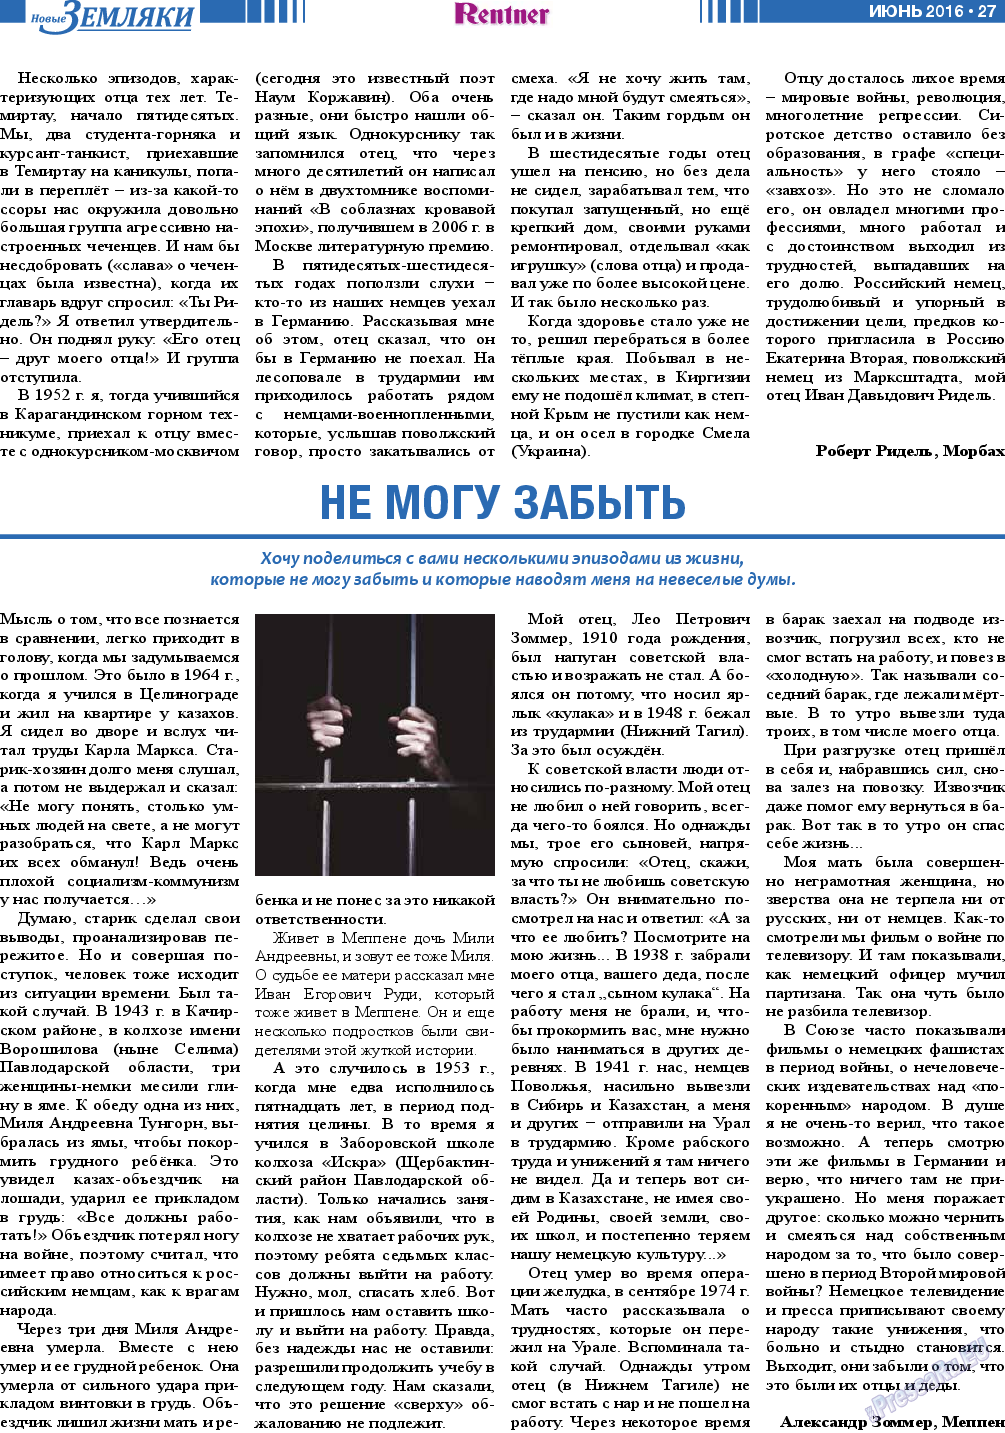 Новые Земляки, газета. 2016 №6 стр.27